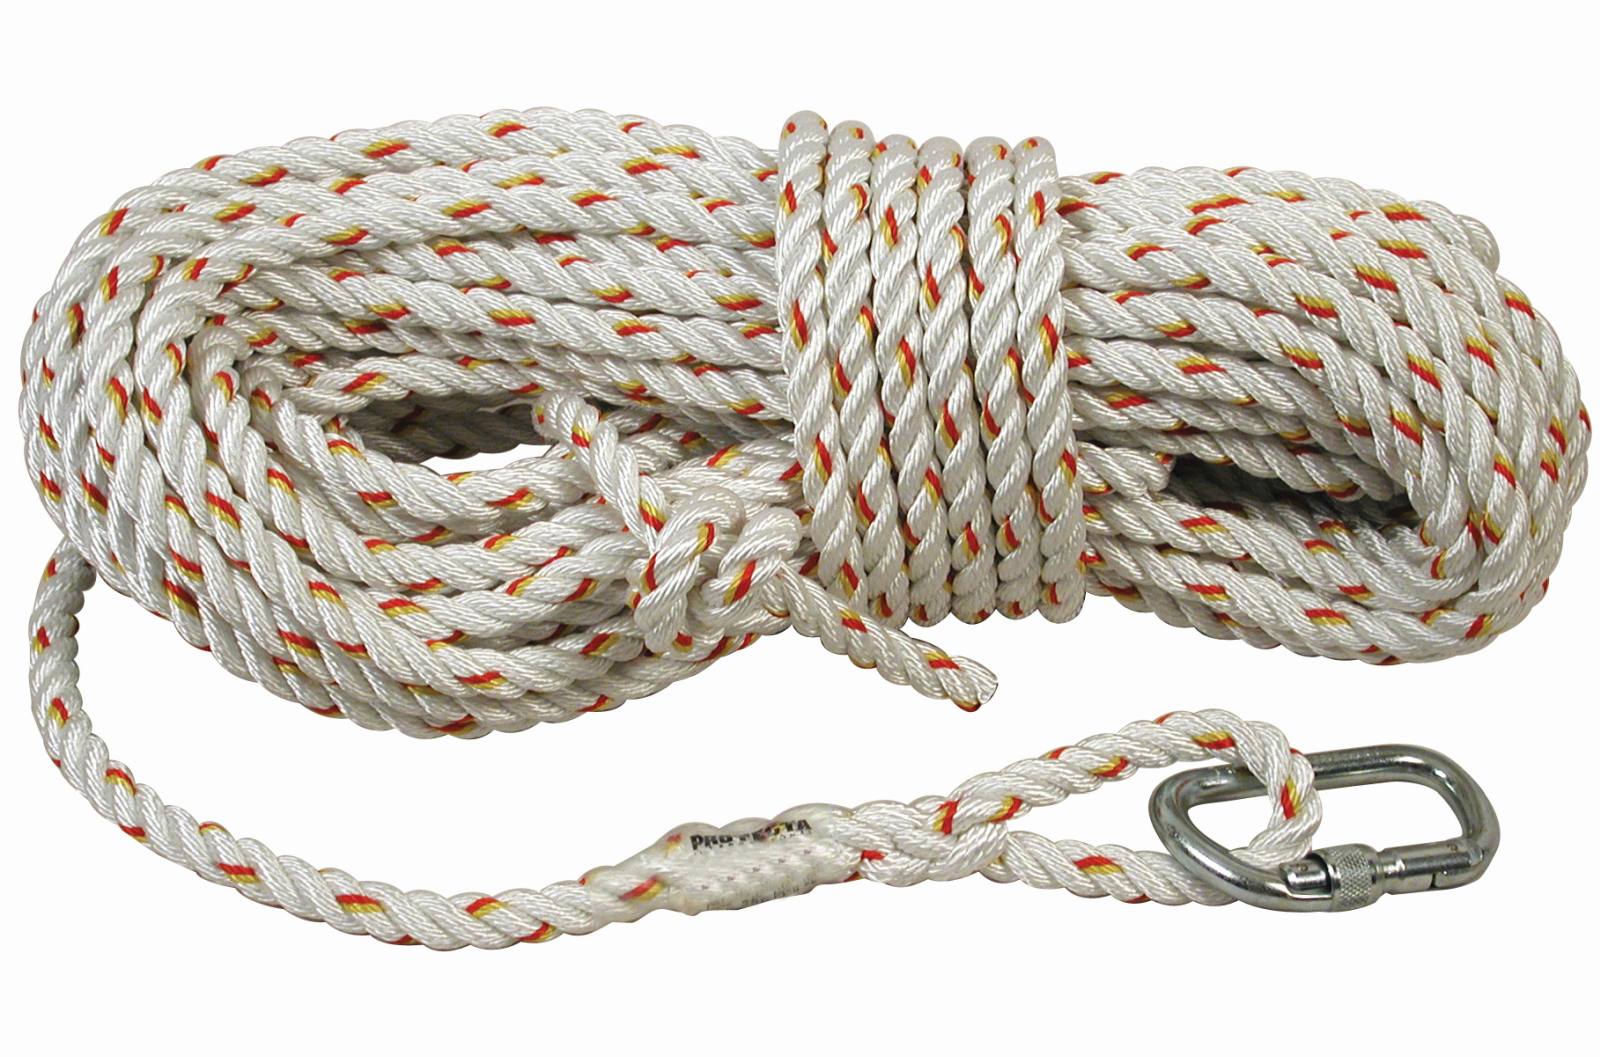 3M PROTECTA Seil für mitlaufendes Auffanggerät Cobra, Länge: 20 m, gedrehtes Seil 14 mm , AJ501 Karabiner Öffnungsweite 17 mm, 20,0 m